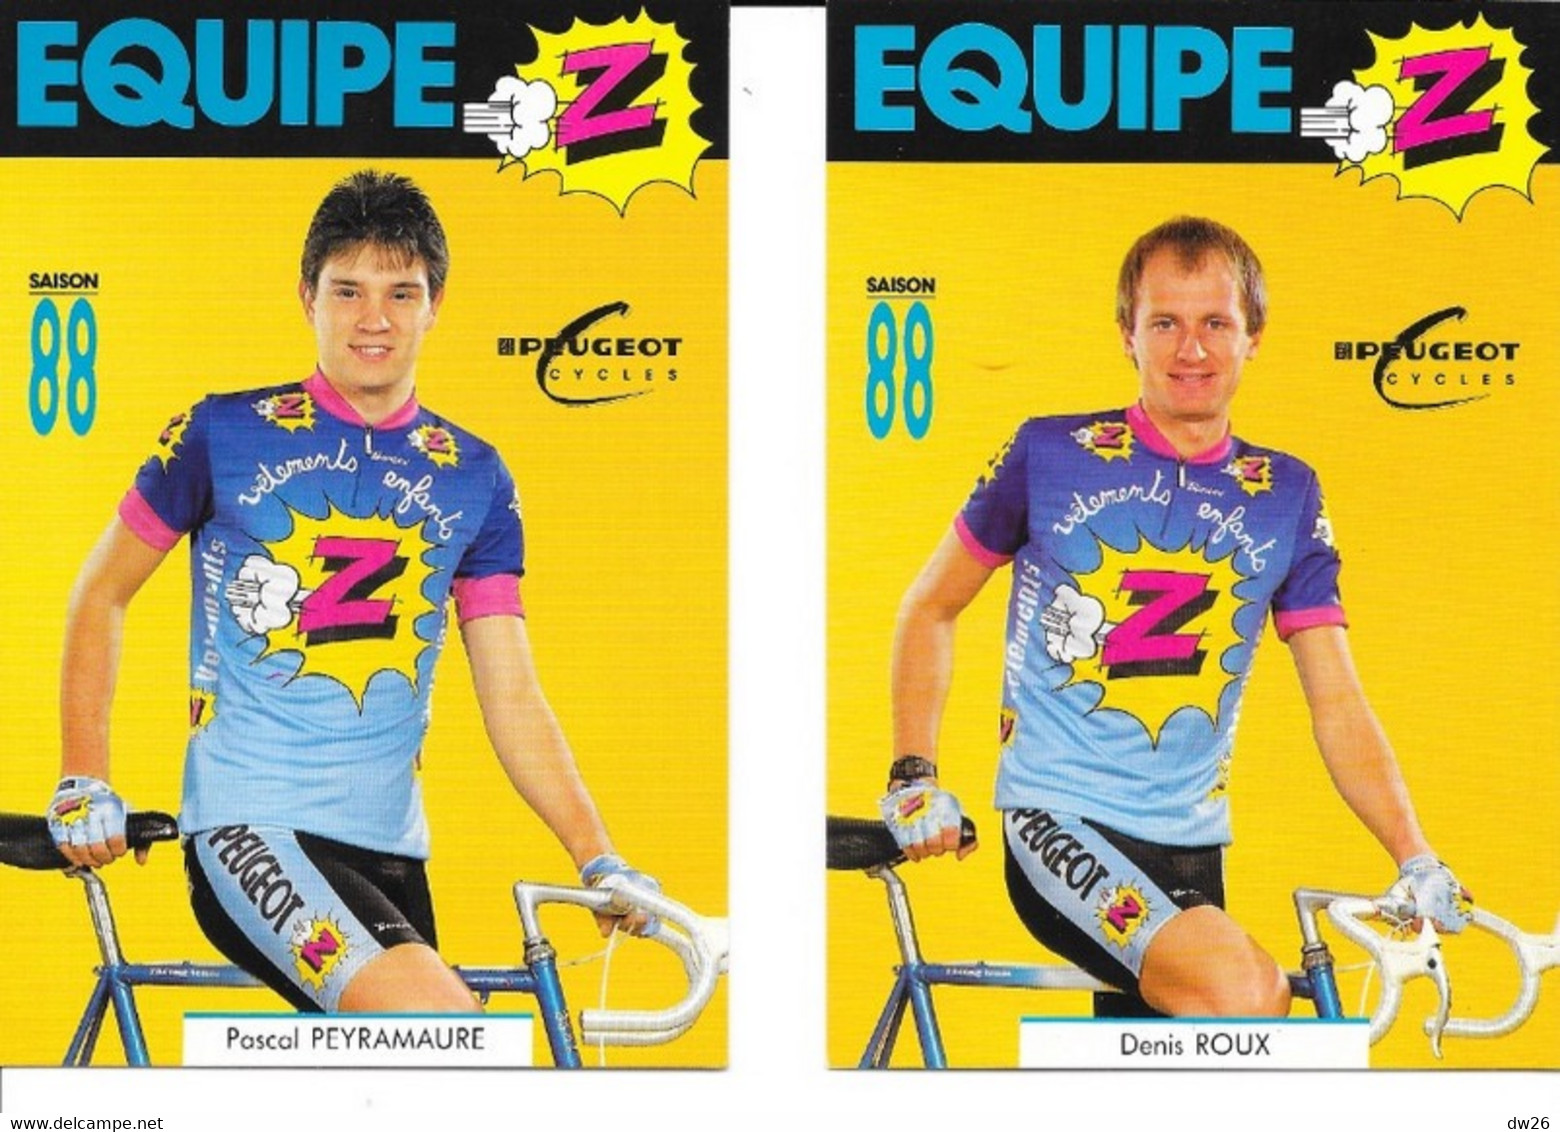 Fiches Cyclisme - Equipe Cycliste Professionnelle Z Peugeot 1988 (Groupe Zannier, St Chamond) 19 Coureurs - Cyclisme